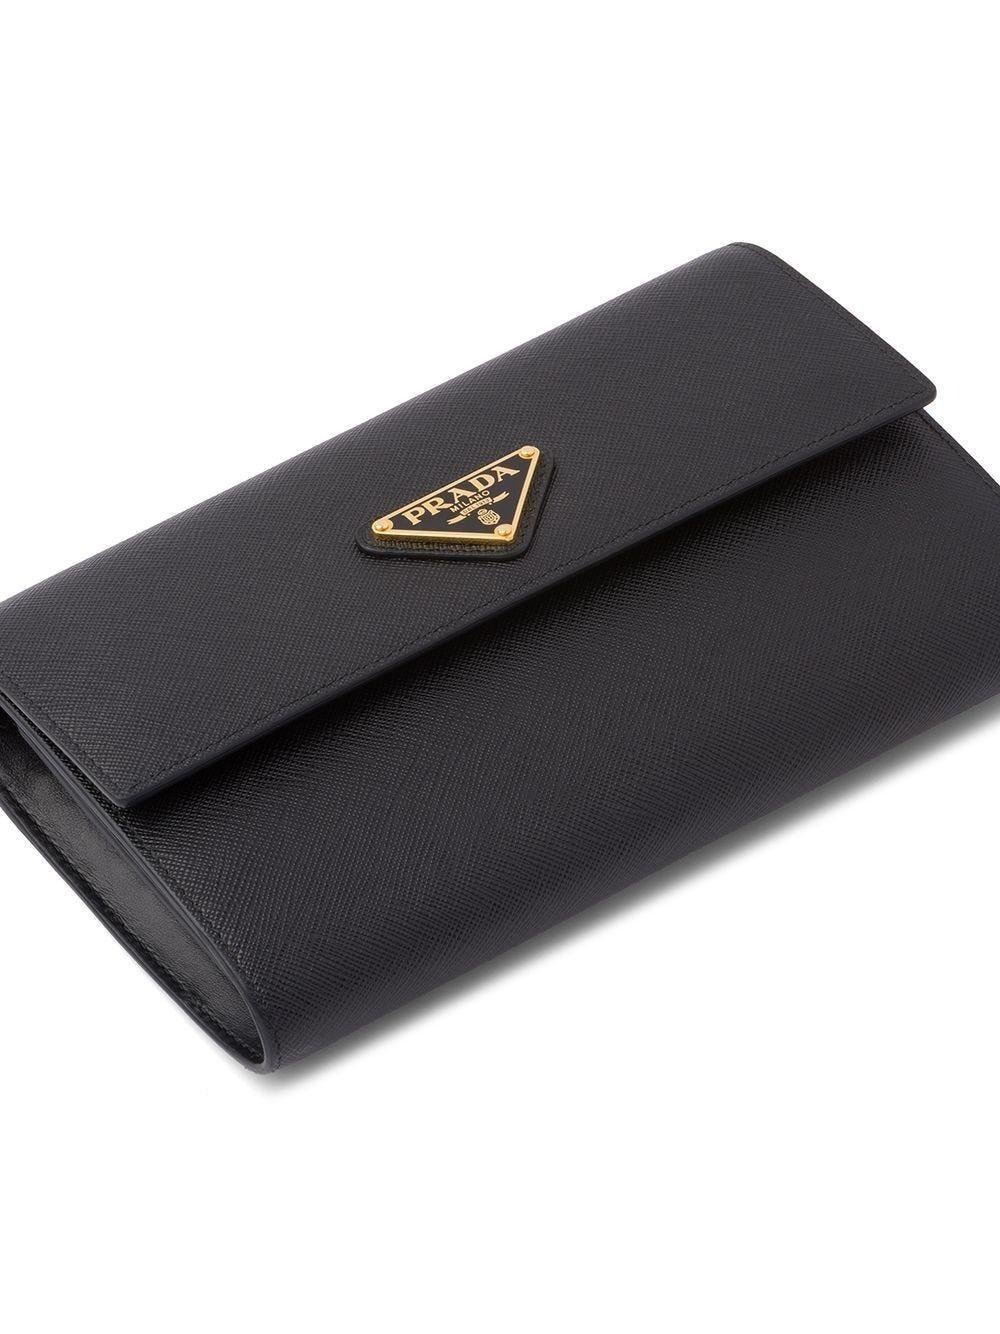 Prada Leather Wallet With Shoulder Strap in Black for Men